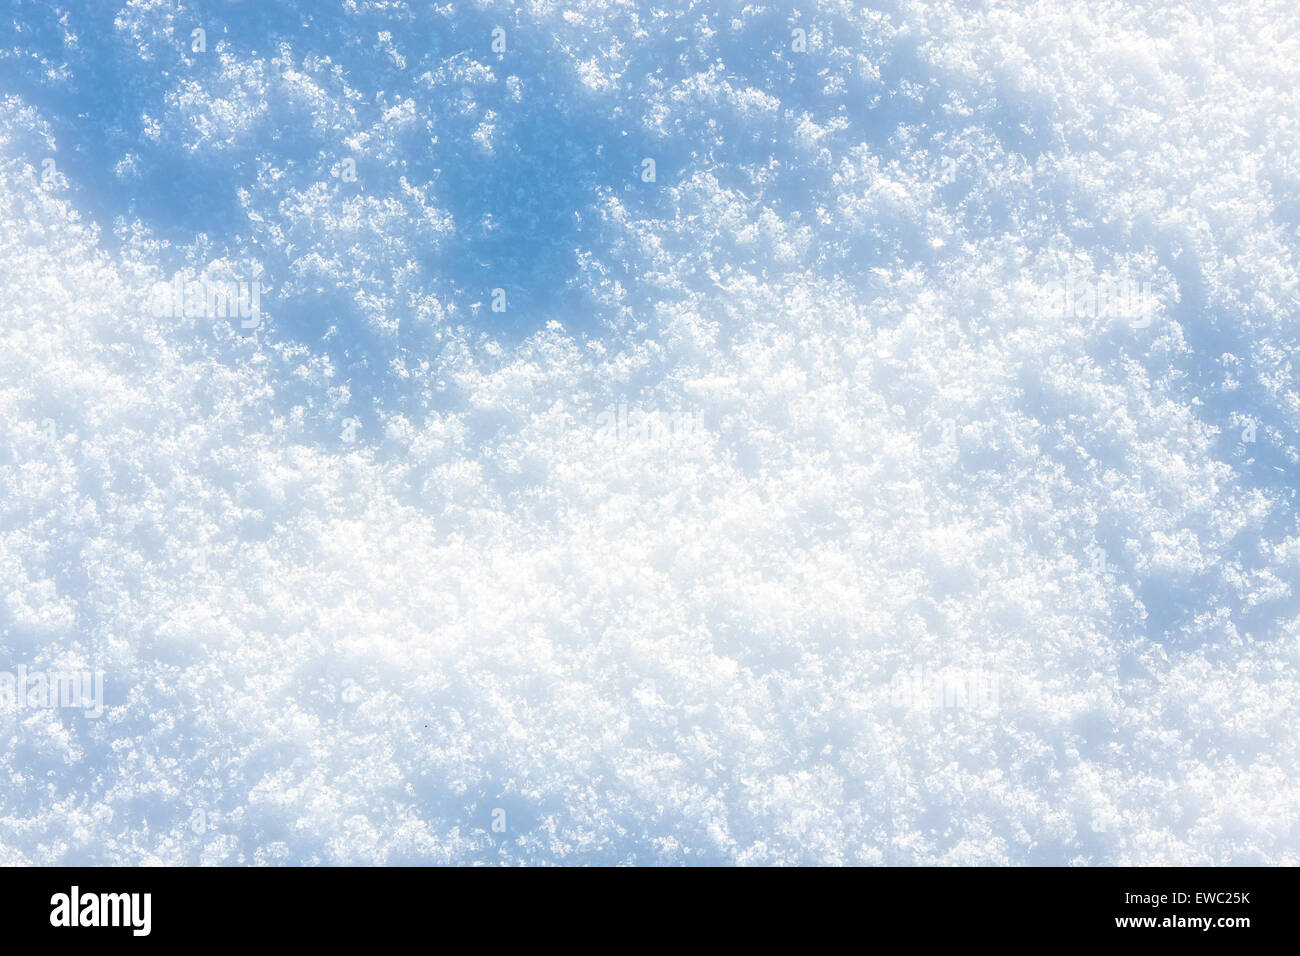 Nieve en tono azul - fondo o textura Foto de stock